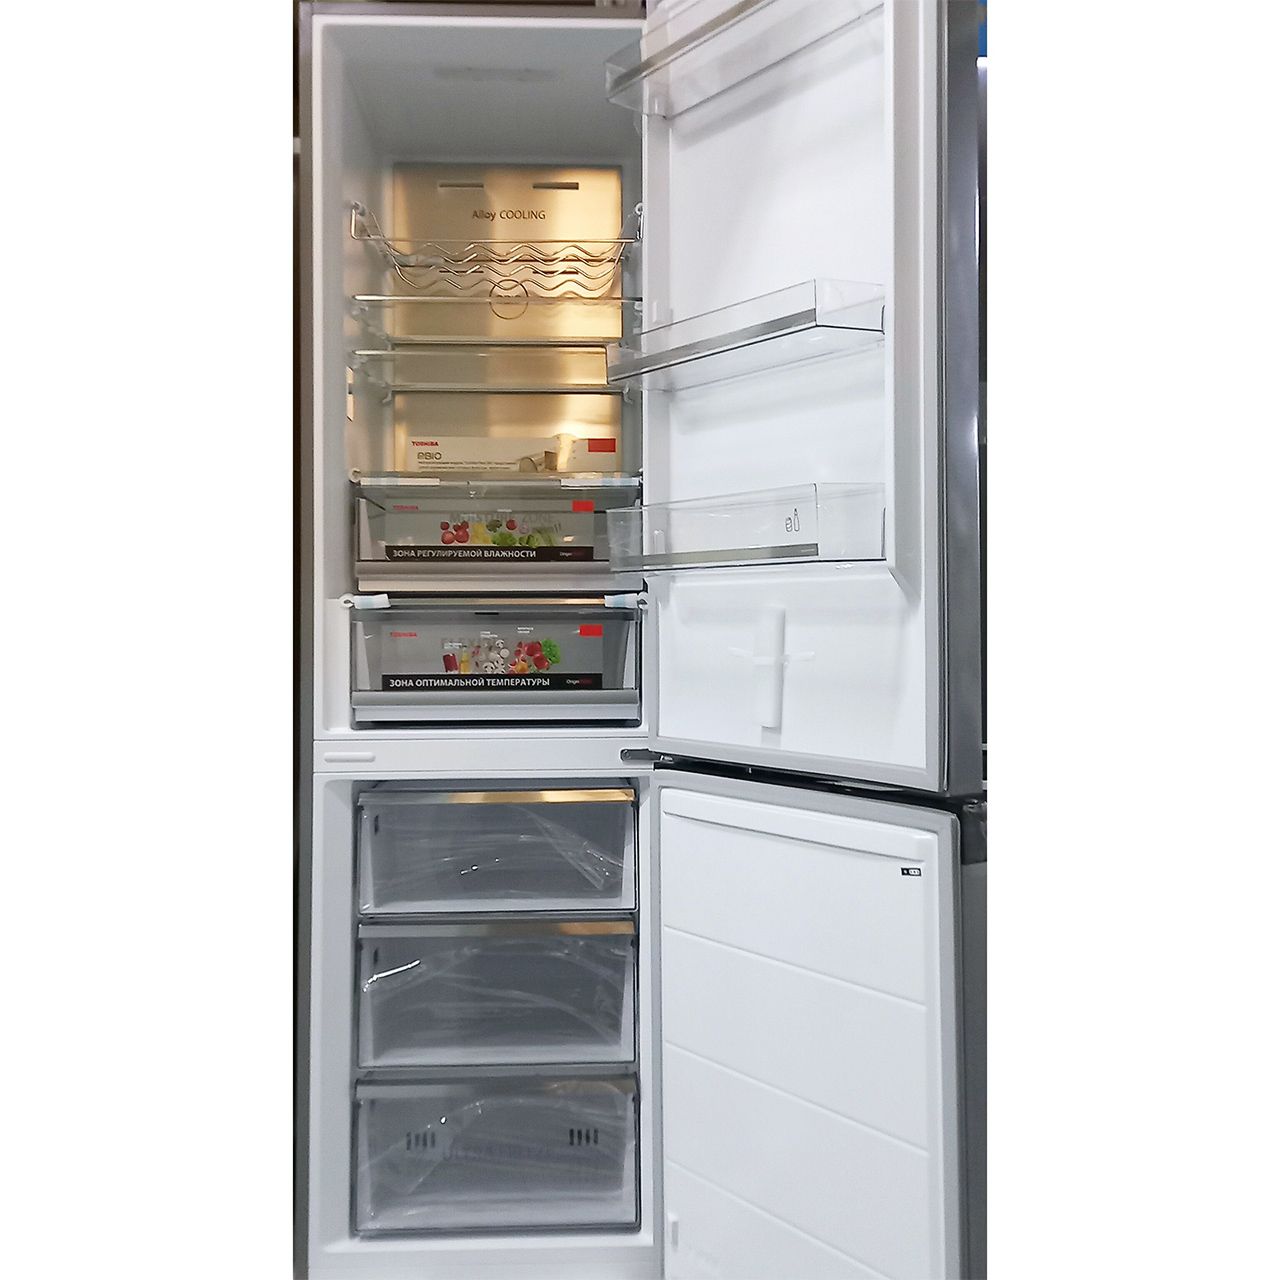 Холодильник двухкамерный Toshiba 388 литров